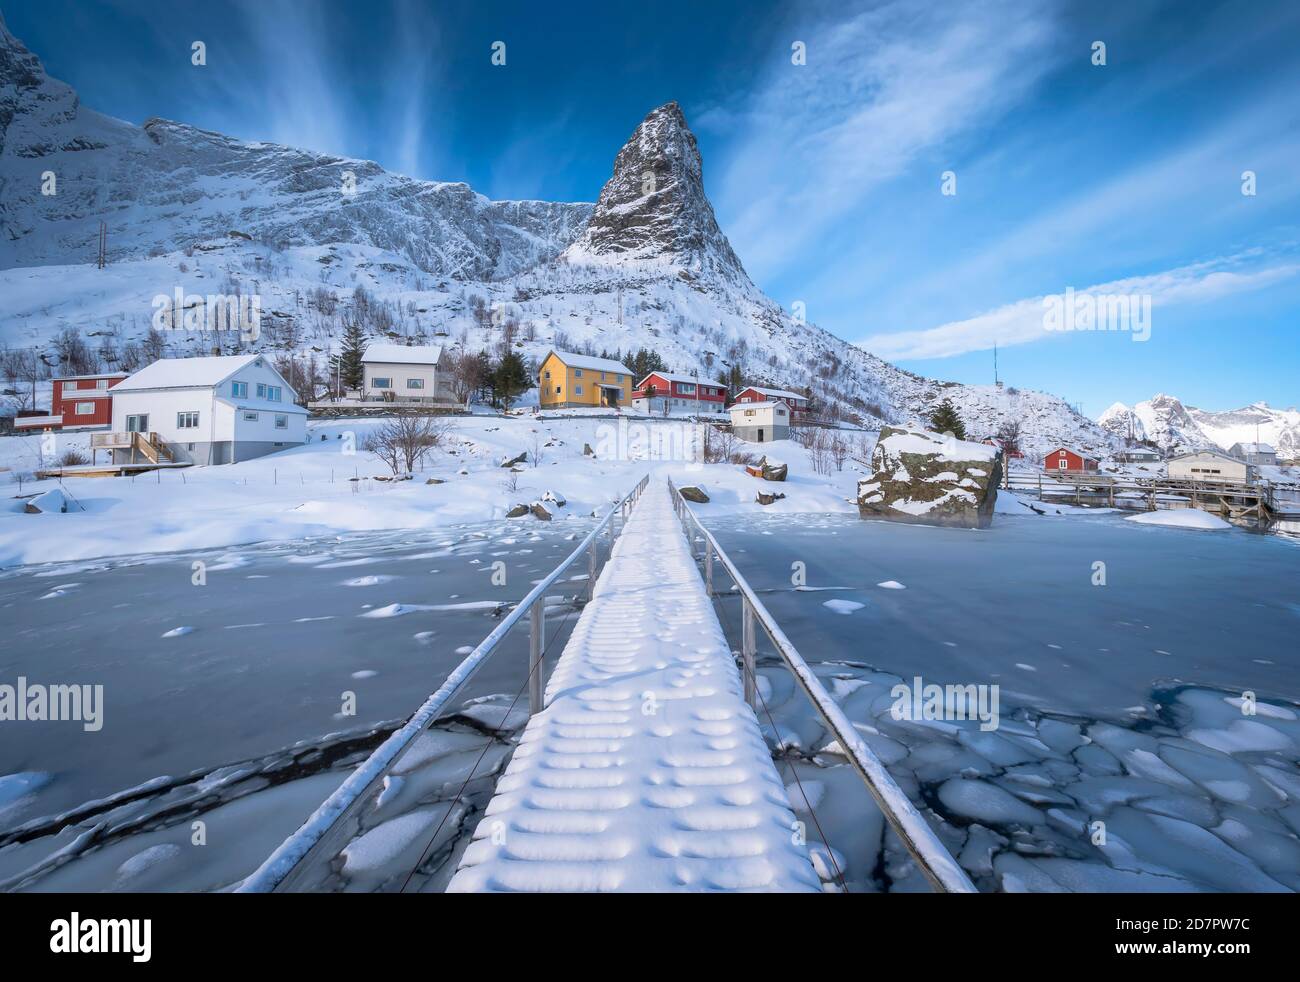 Fußgängerbrücke über gefrorenen Fjord, im Hintergrund Wohnhäuser in verschneite Landschaft und Bergformation Hammarskaftet, Nordland, Lofoten, Norwegen Stockfoto